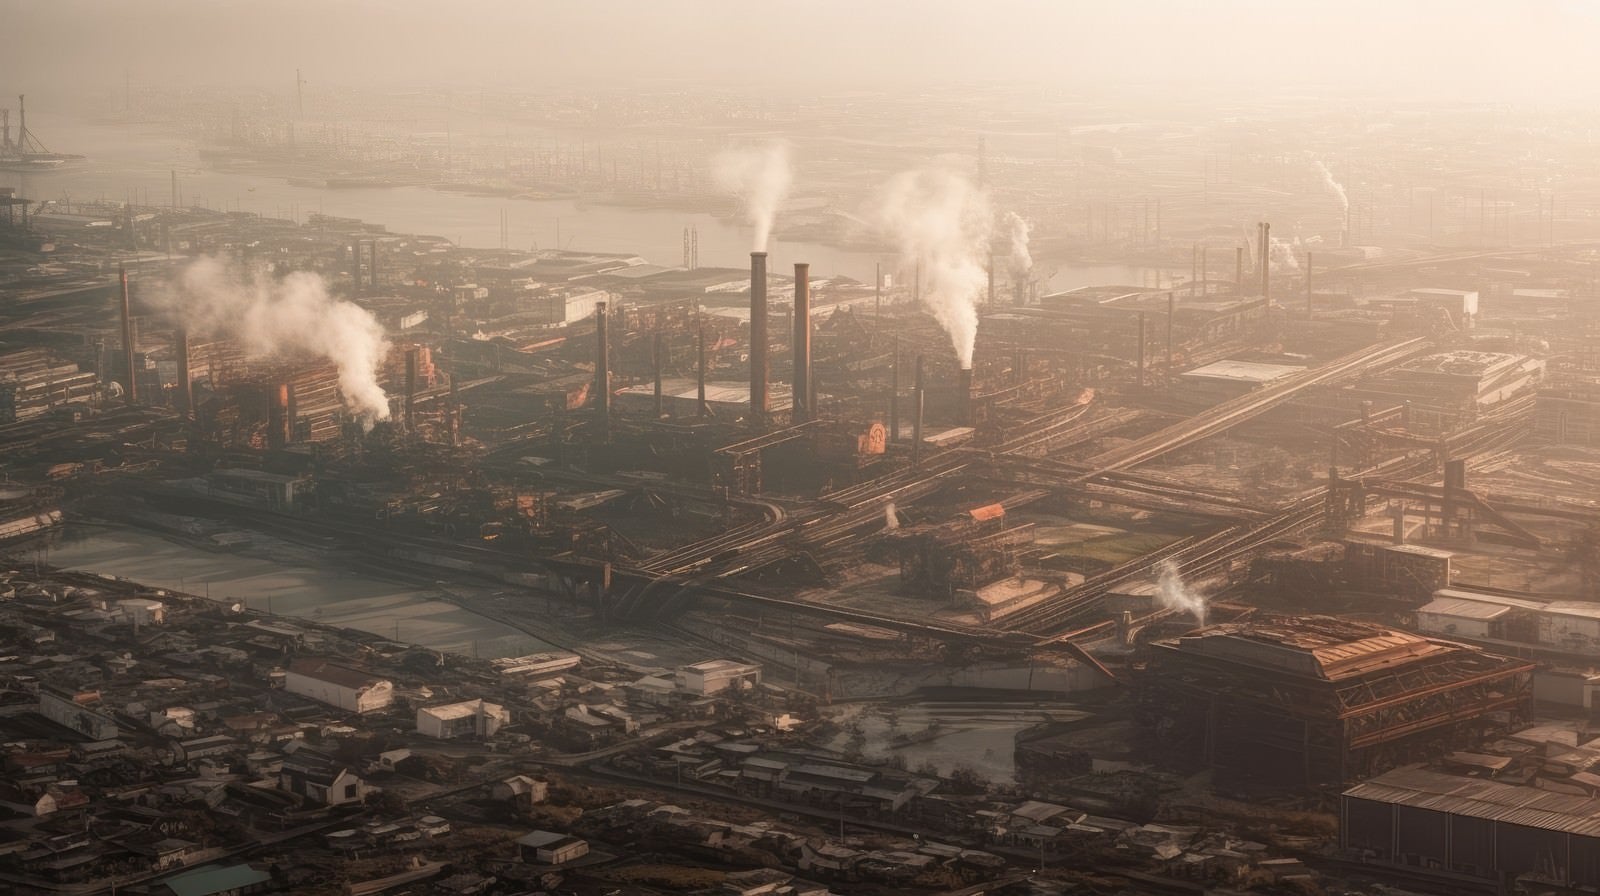 「光化学スモッグで大気汚染がすすむ工場地帯」の写真